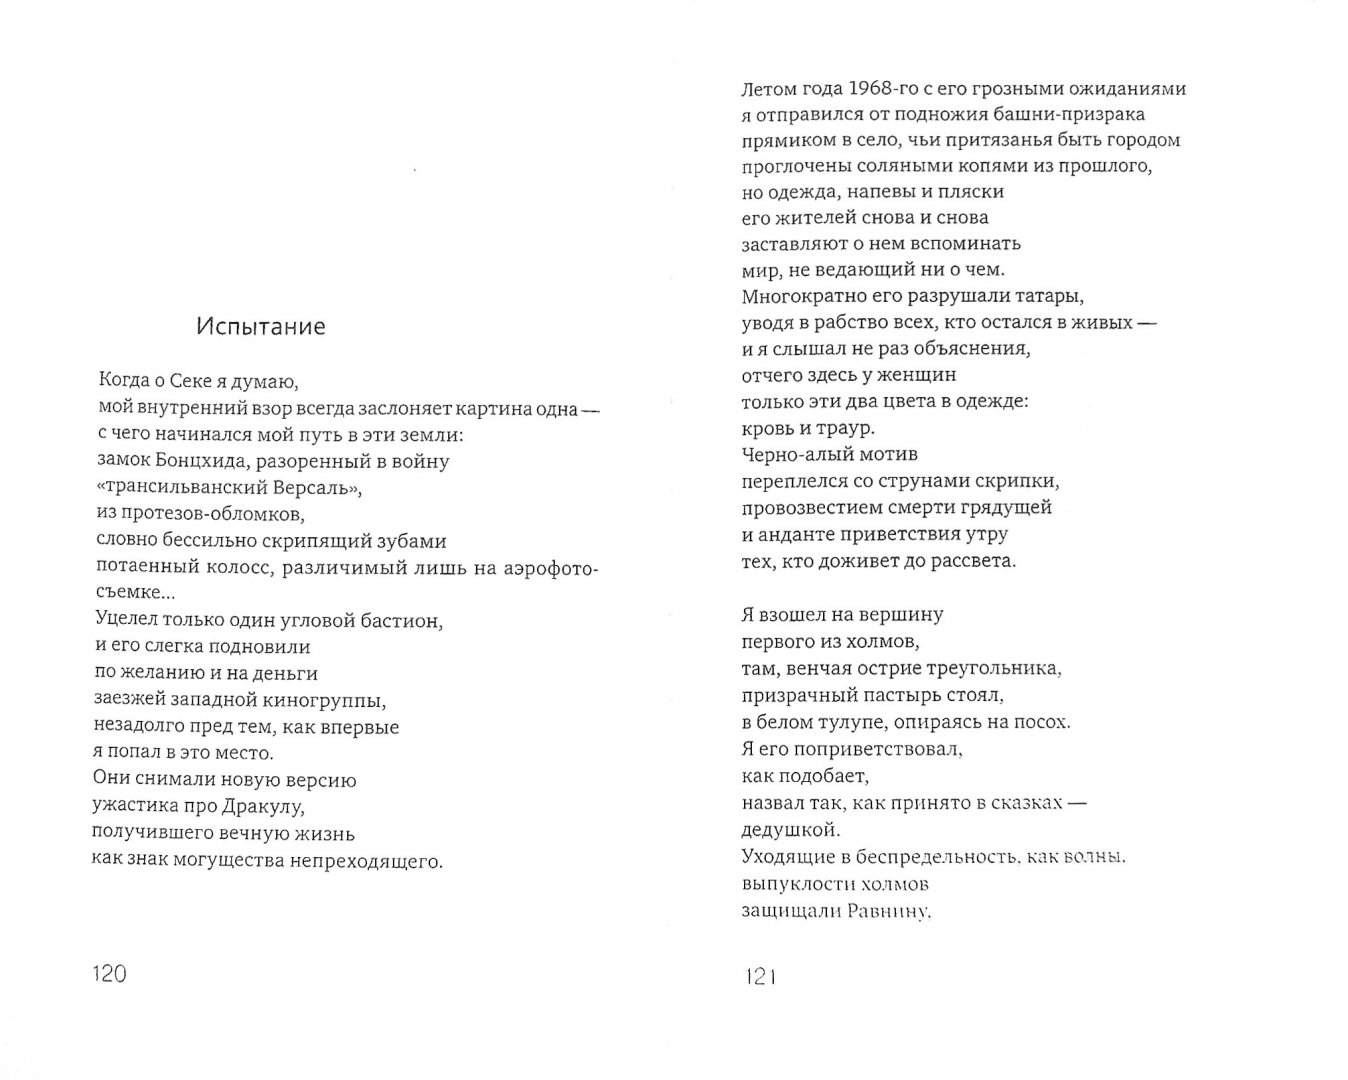 Иллюстрация 1 из 9 для Неведомой сути забытые грани... Из современной венгерской поэзии - Вашади, Торнаи, Юхас | Лабиринт - книги. Источник: Лабиринт